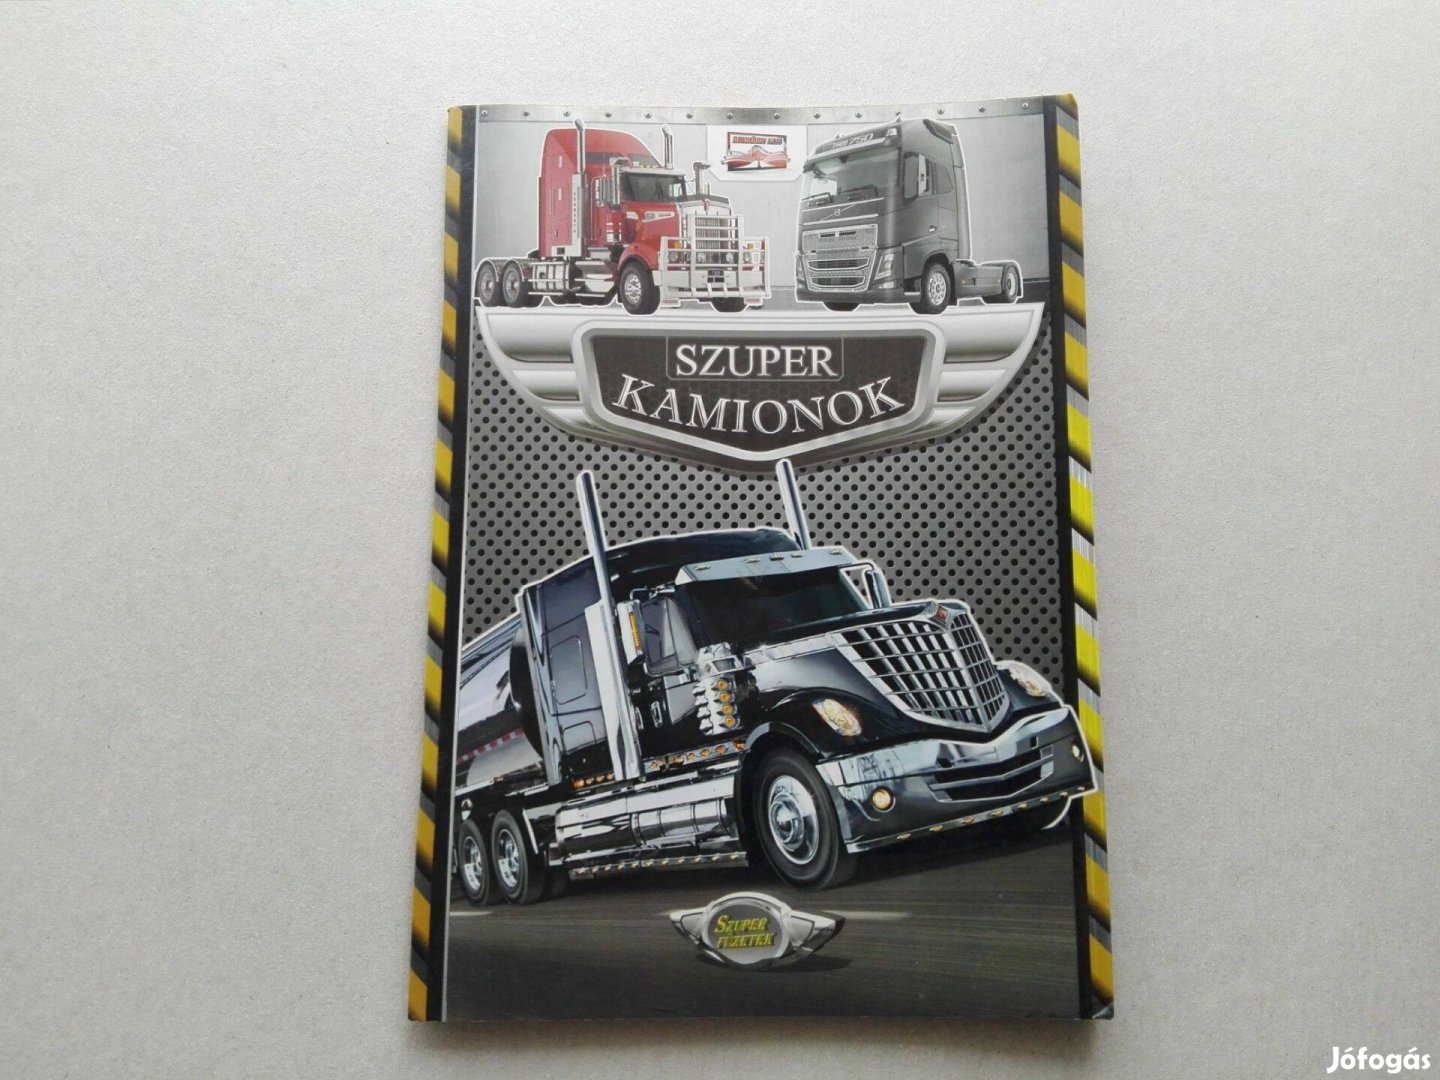 Szuper kamionok -Teljesen Új ismeretterjesztő füzet gyermekeknek eladó